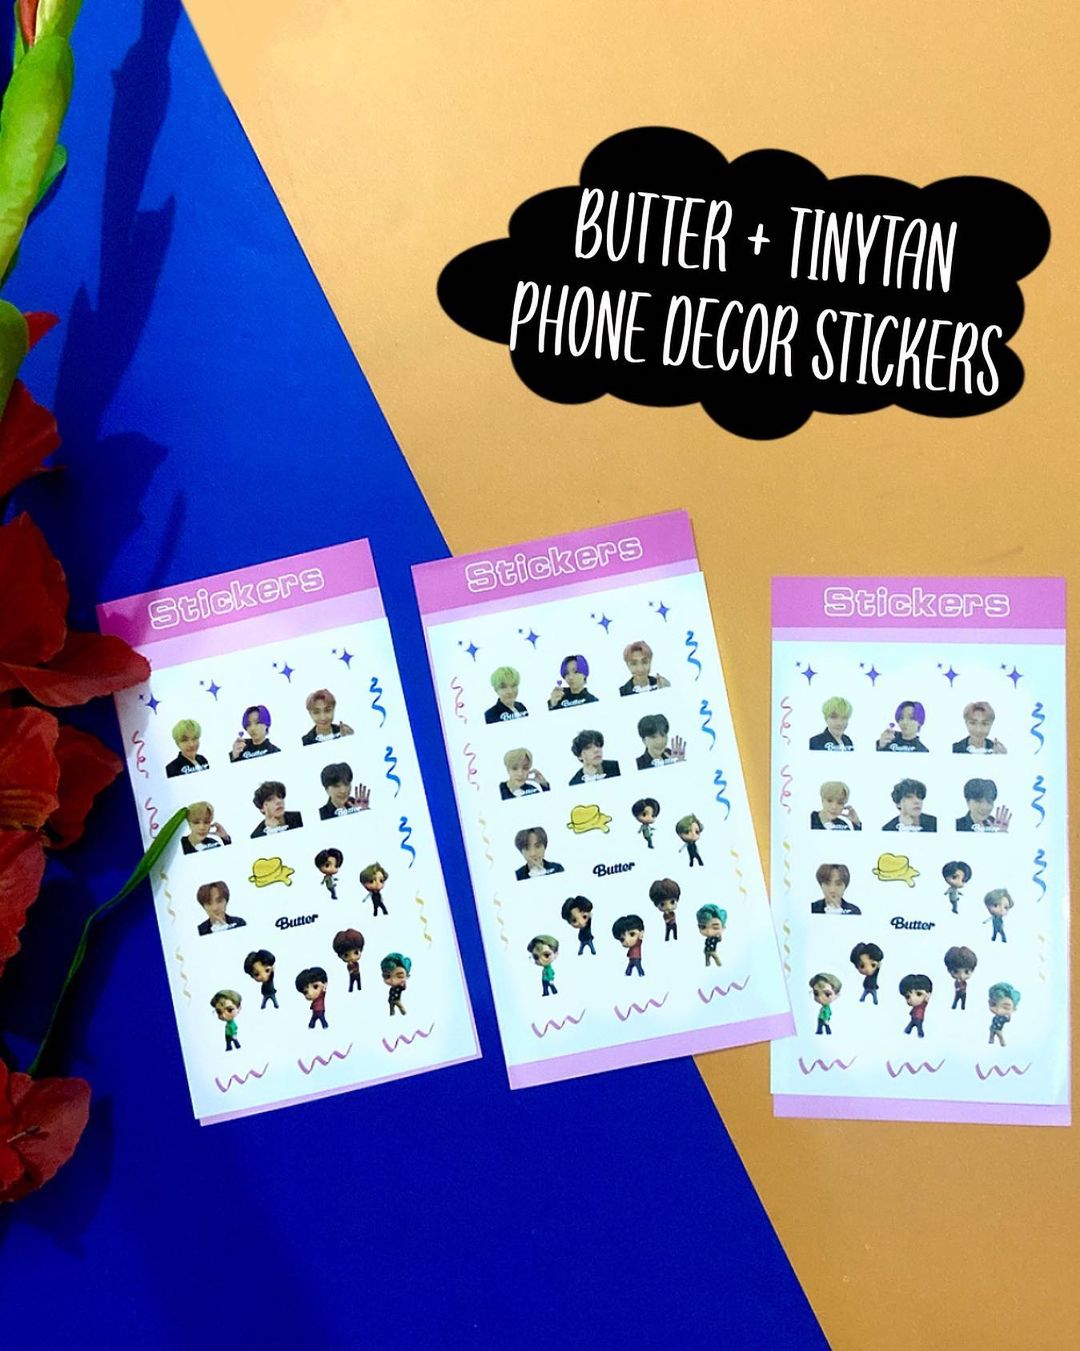 Butter + TinyTAN Sticker sheet